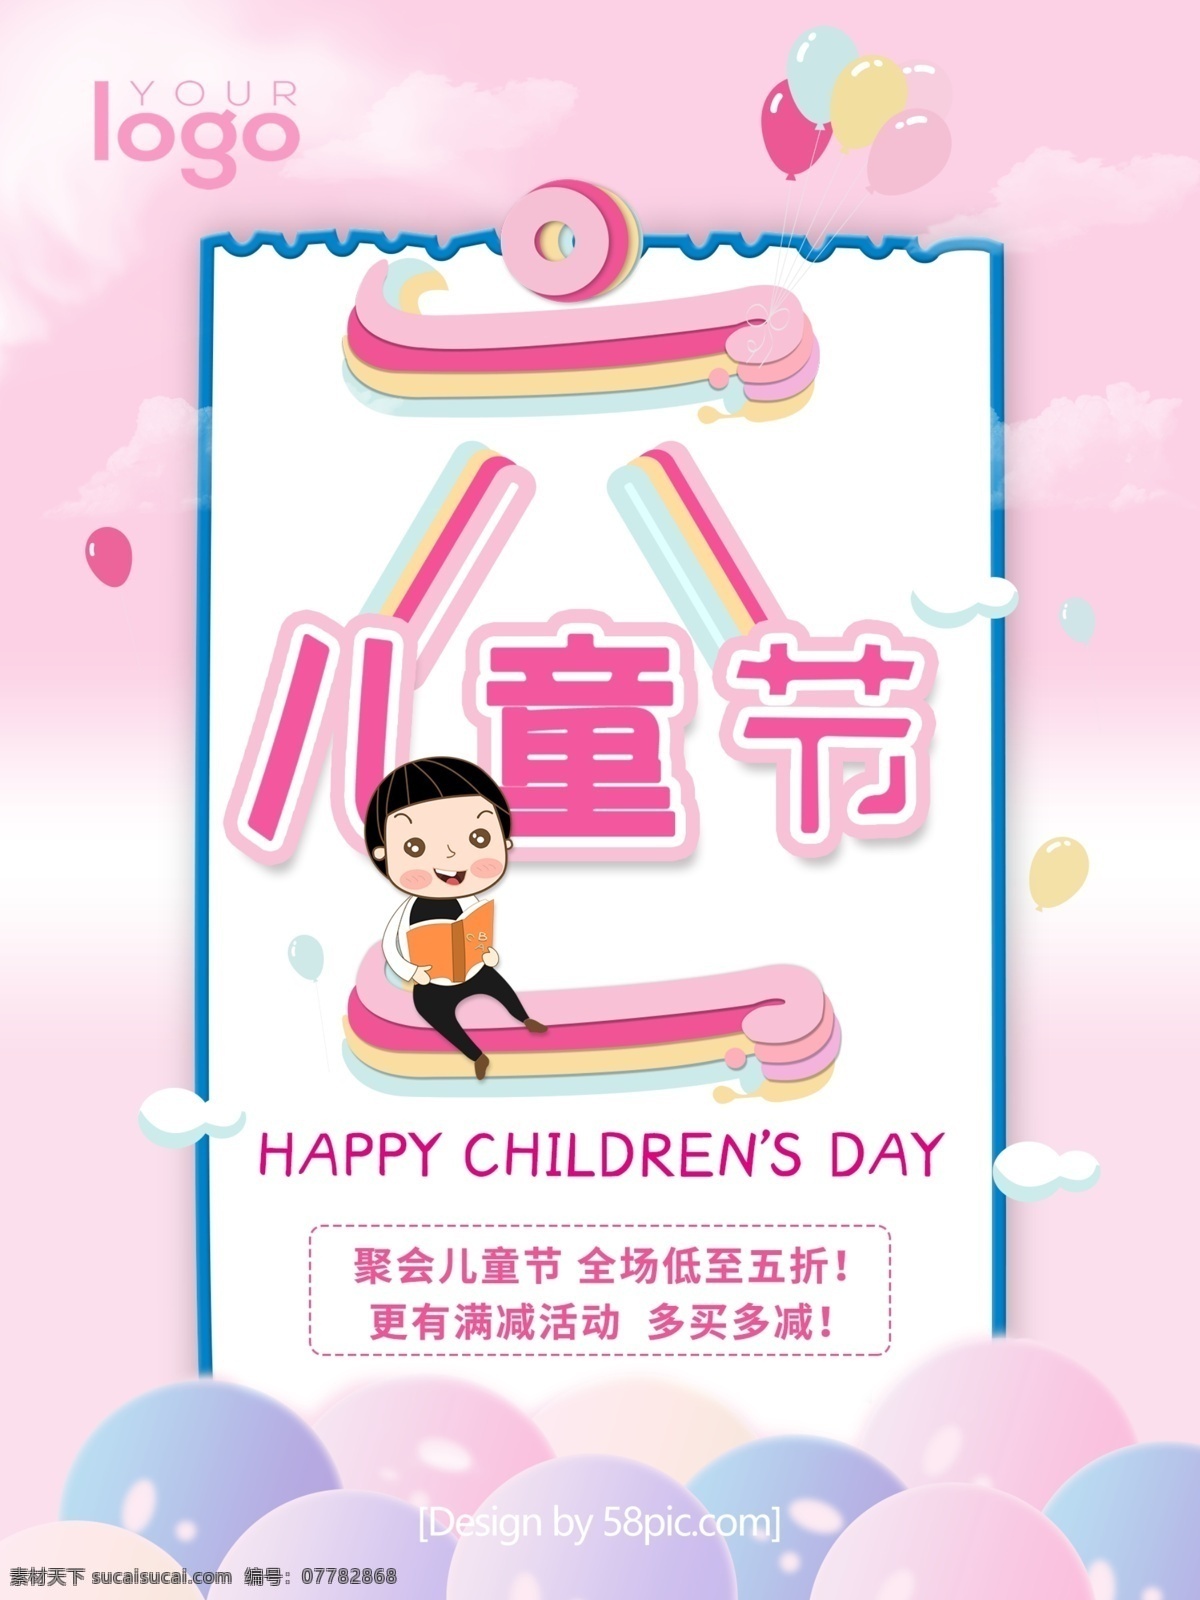 创意 粉色 原创 卡通 61 六 促销 儿童节 海报 六一 气球 云 蓝色 六一儿童节